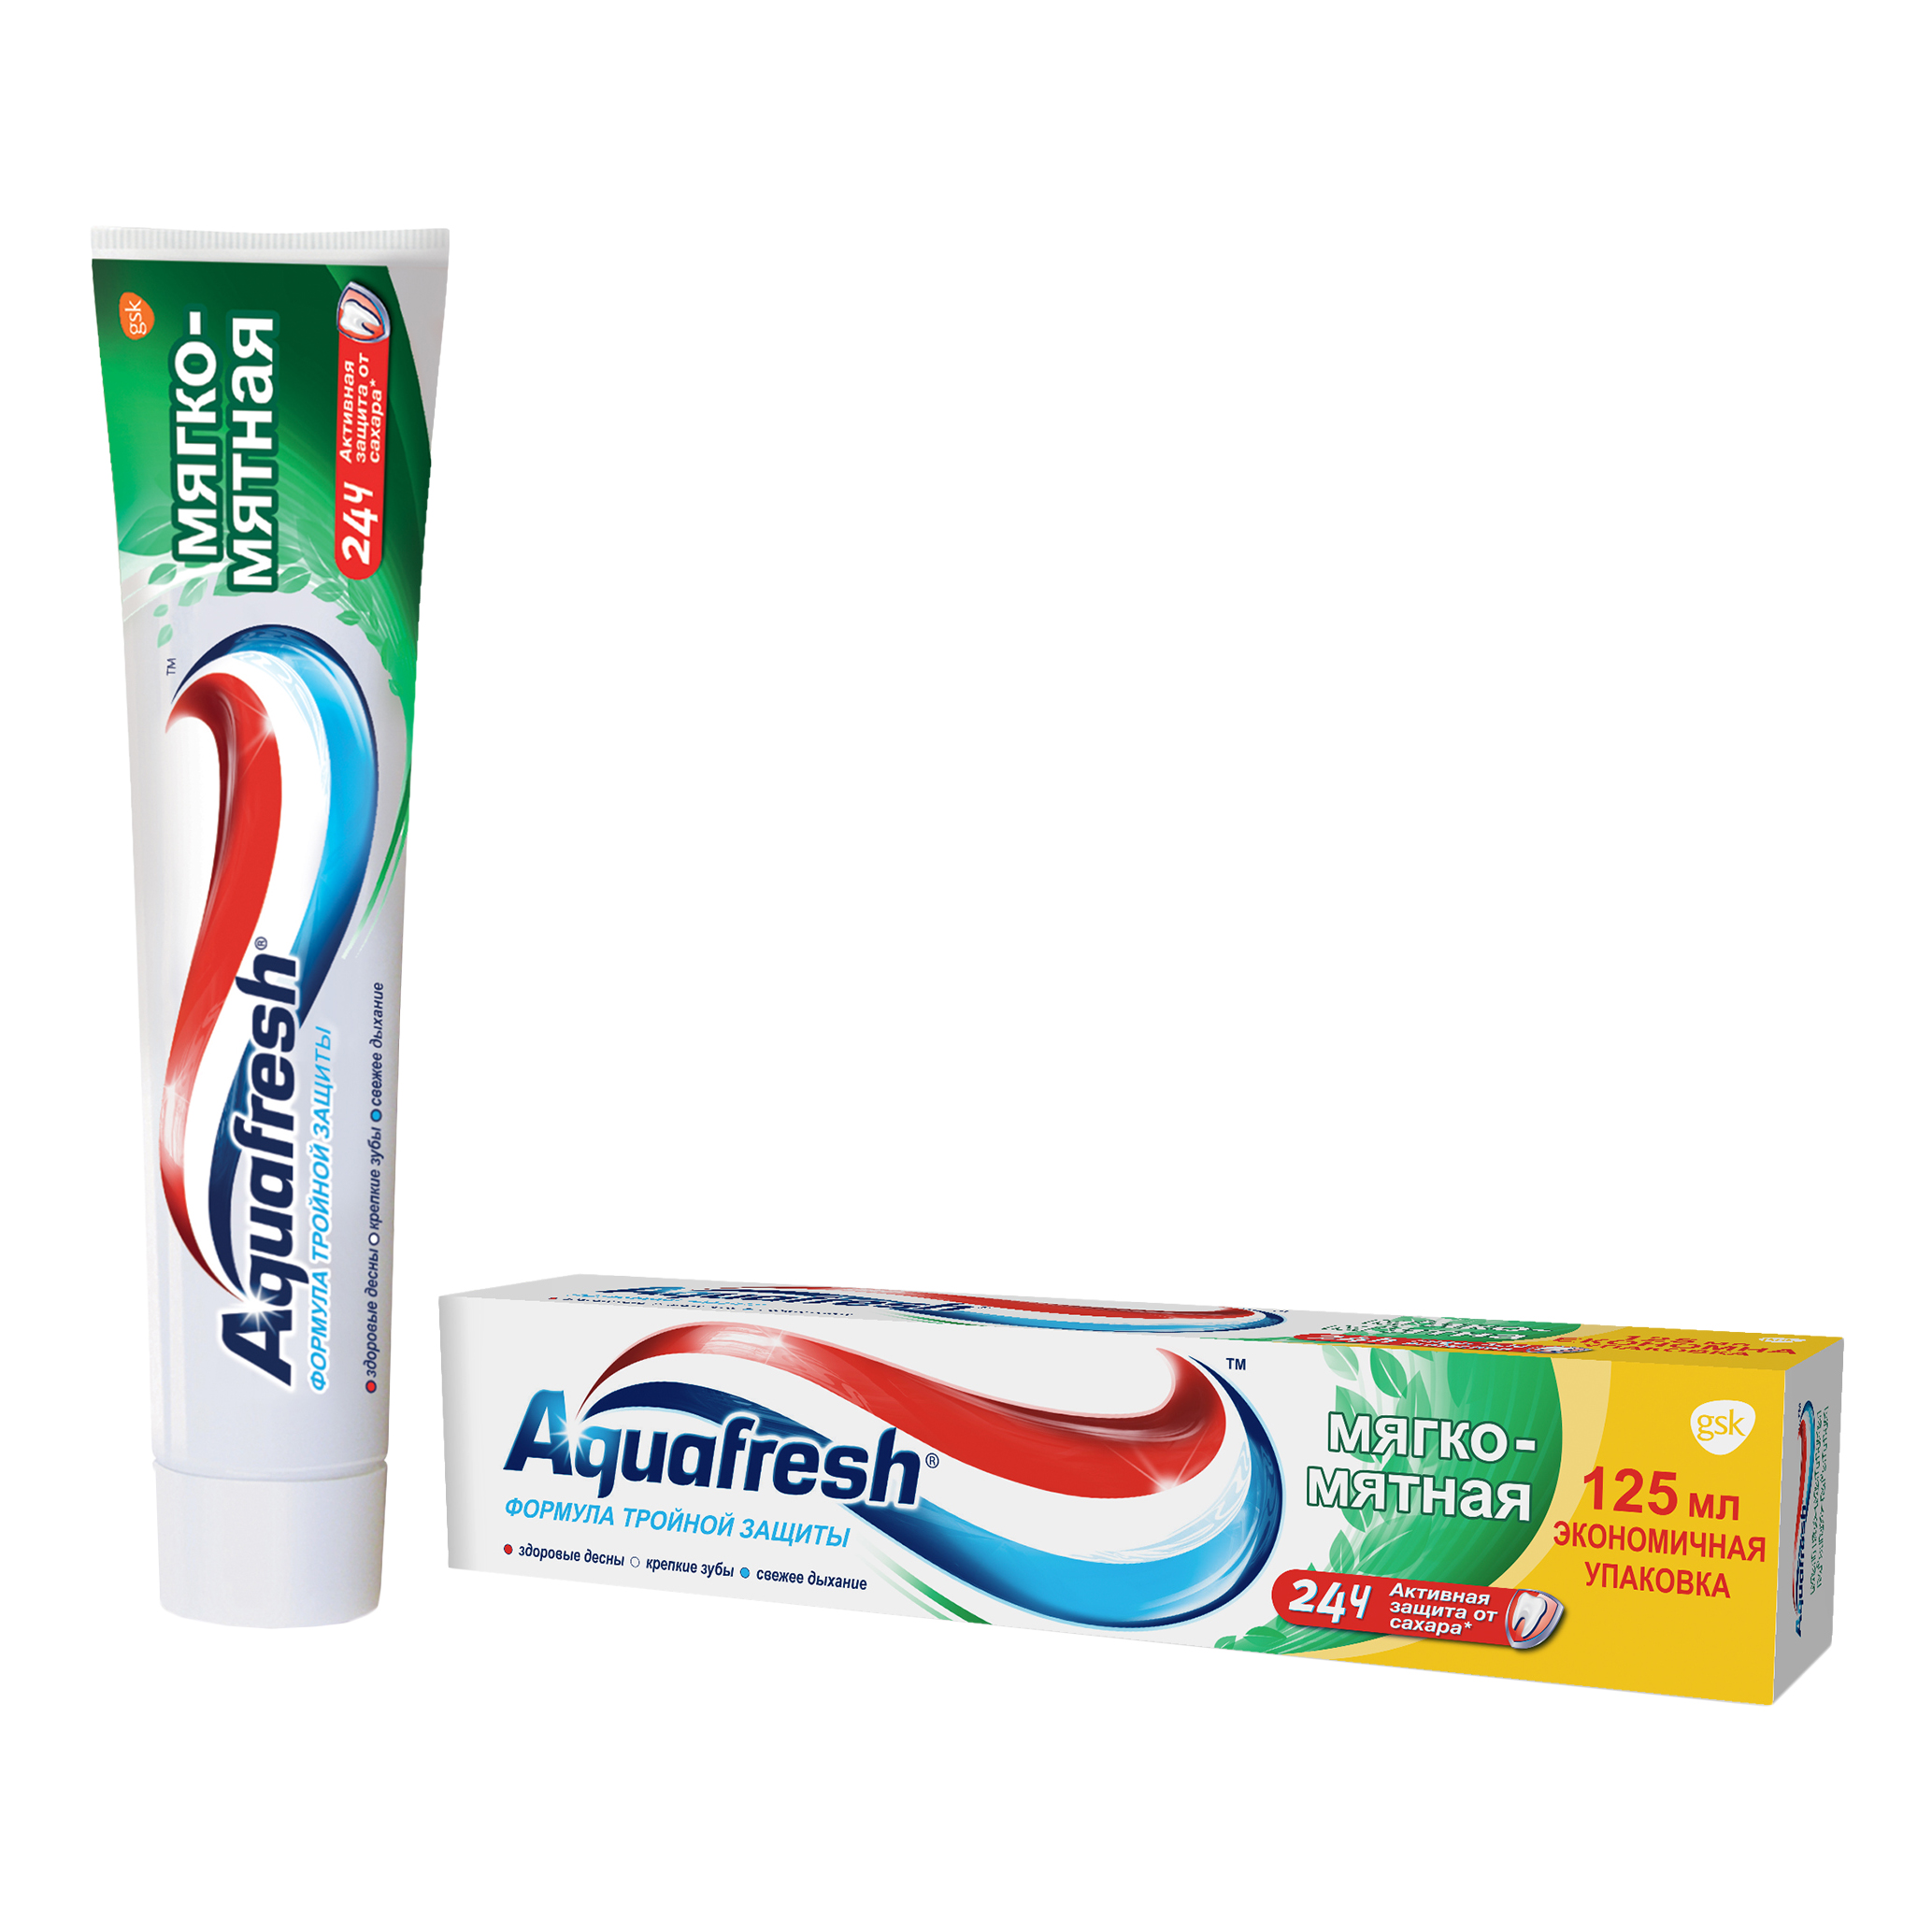 Купить Зубная паста Aquafresh Тройная защита Мягко-мятная, 125 мл, зубная паста PNS70801R00/PNS7093700, Великобритания